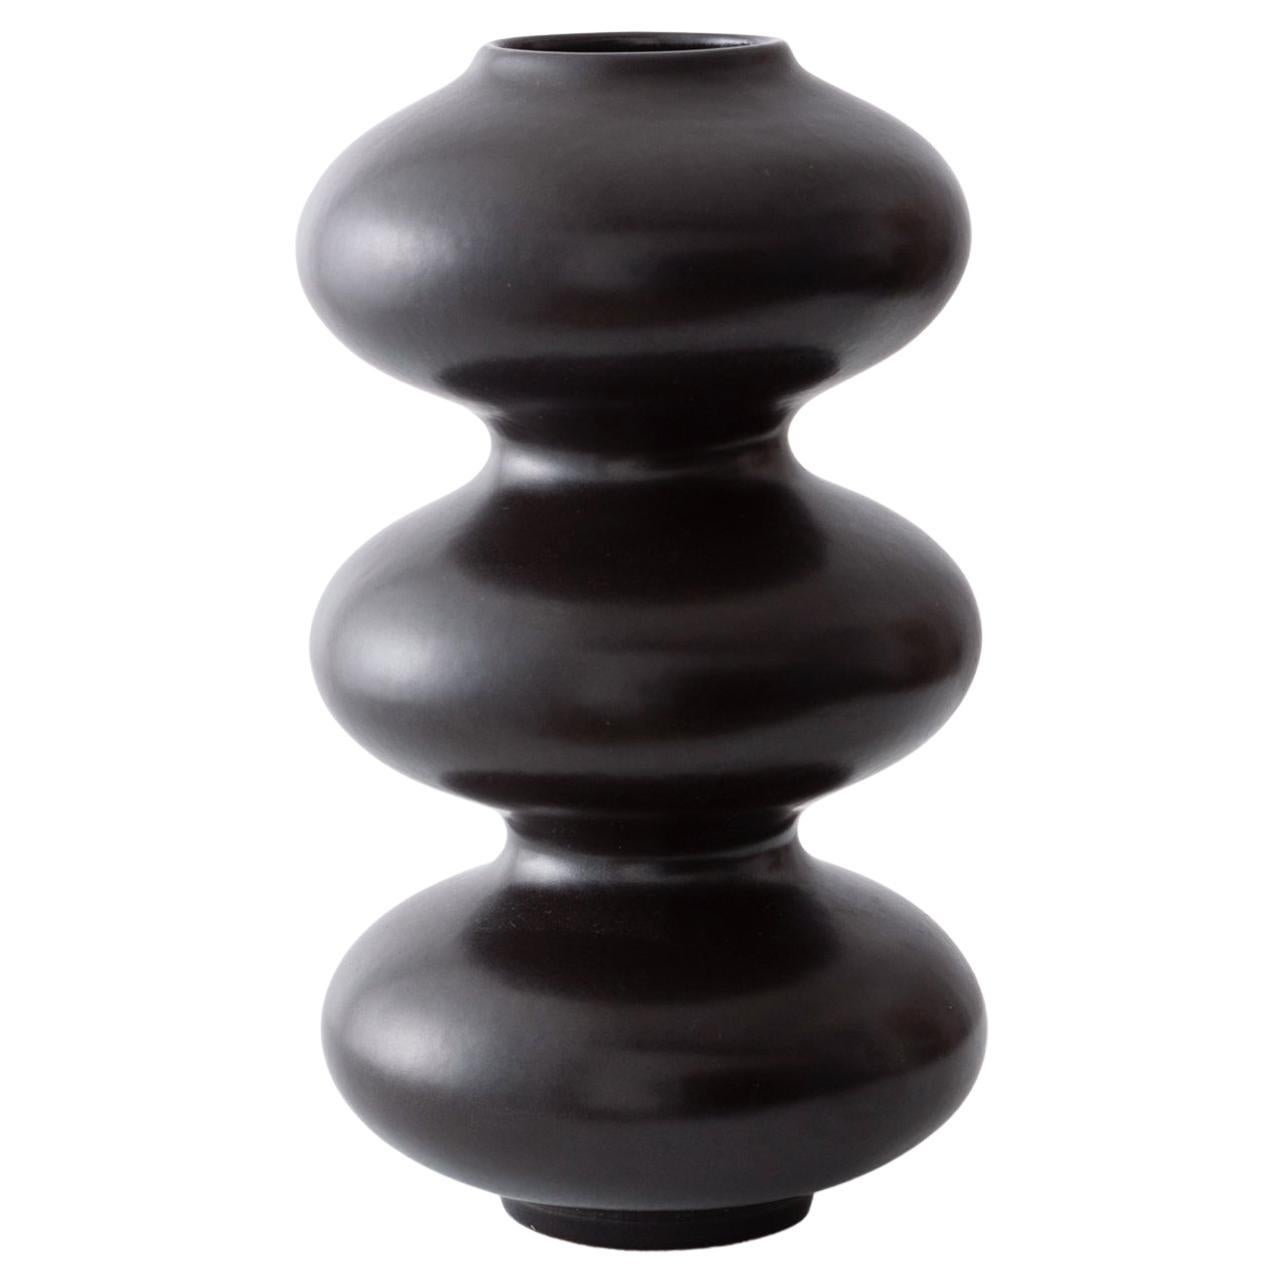 Organic Modern Ceramic Wave Form Vase in Black Glaze by Forma Rosa Studio